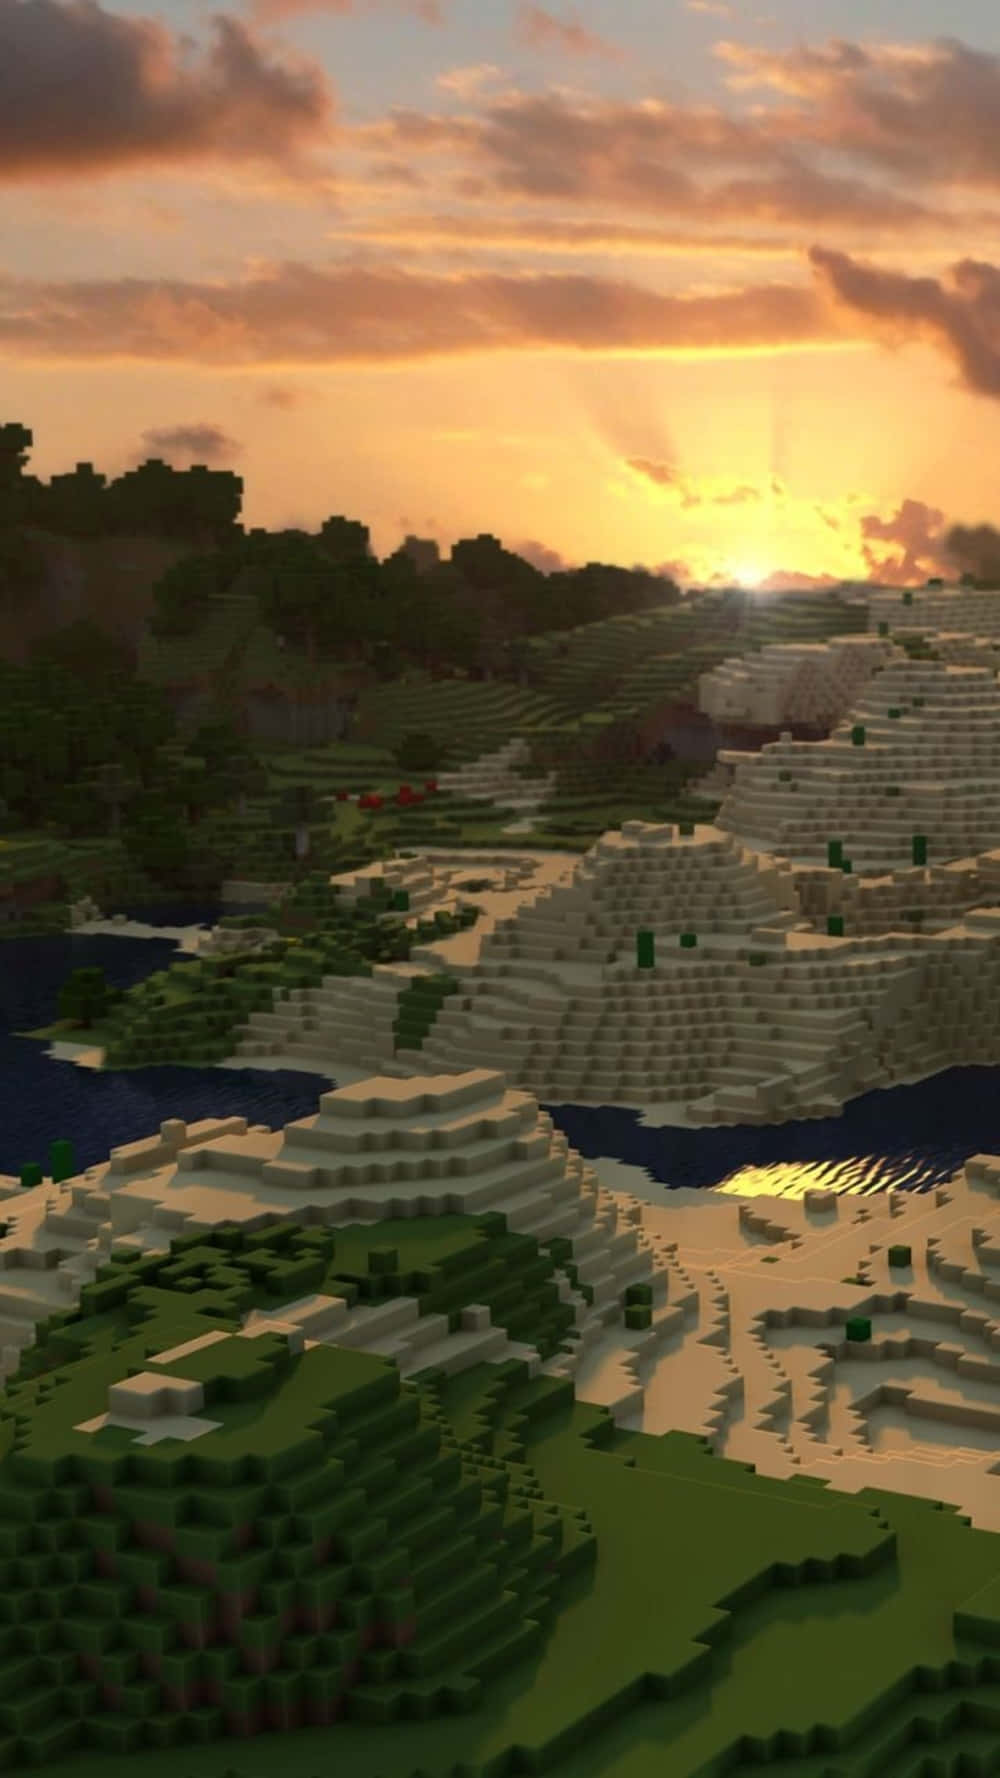 Fondode Pantalla Minecraft Para Pixel 3xl De La Puesta De Sol En El Cielo.